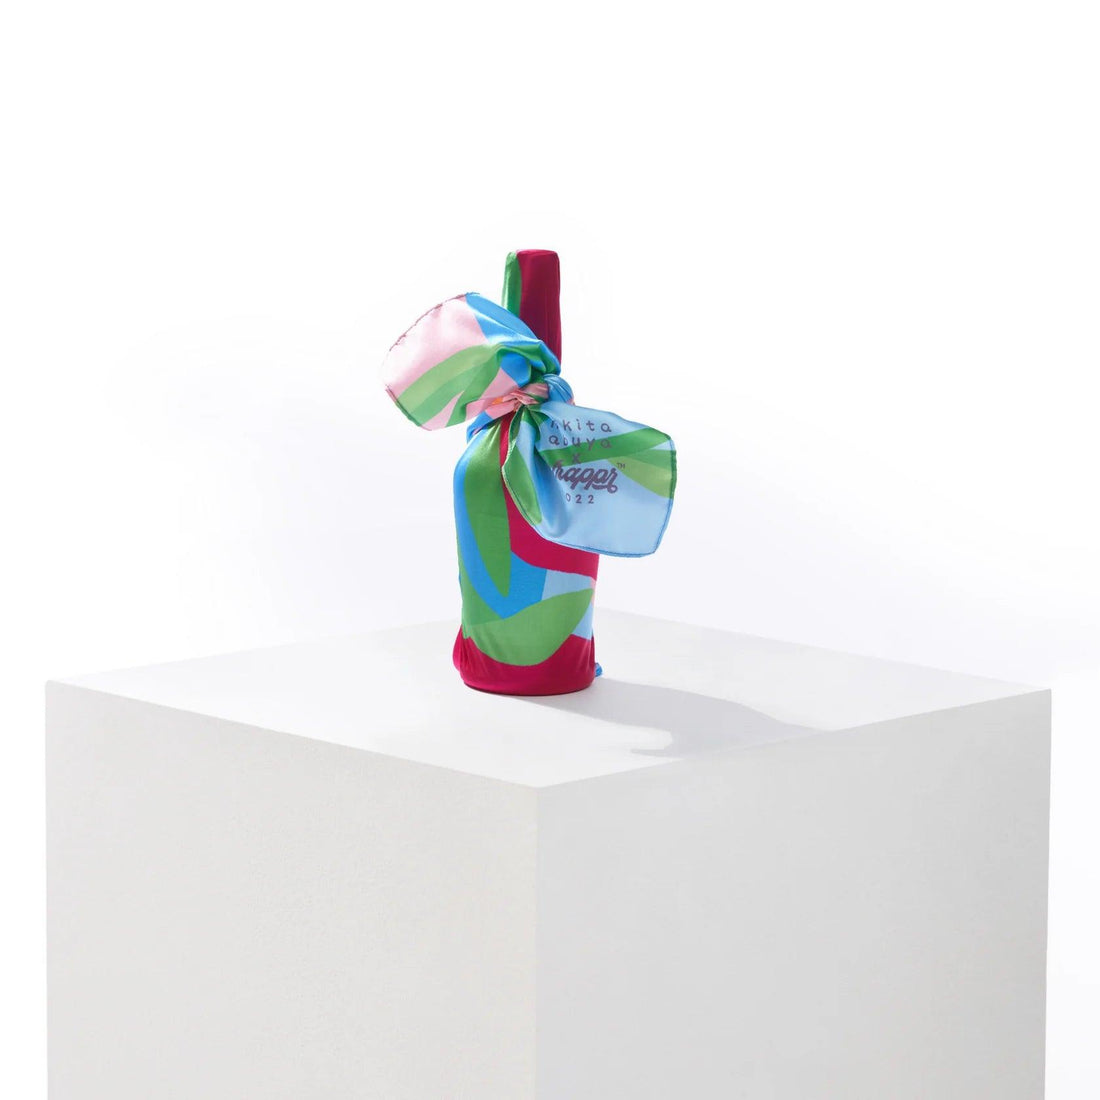 Blossom Collection Bundle | 3 Furoshiki Gift Wraps by Nikita Abuya, 18", 28" & 35" - Wrappr